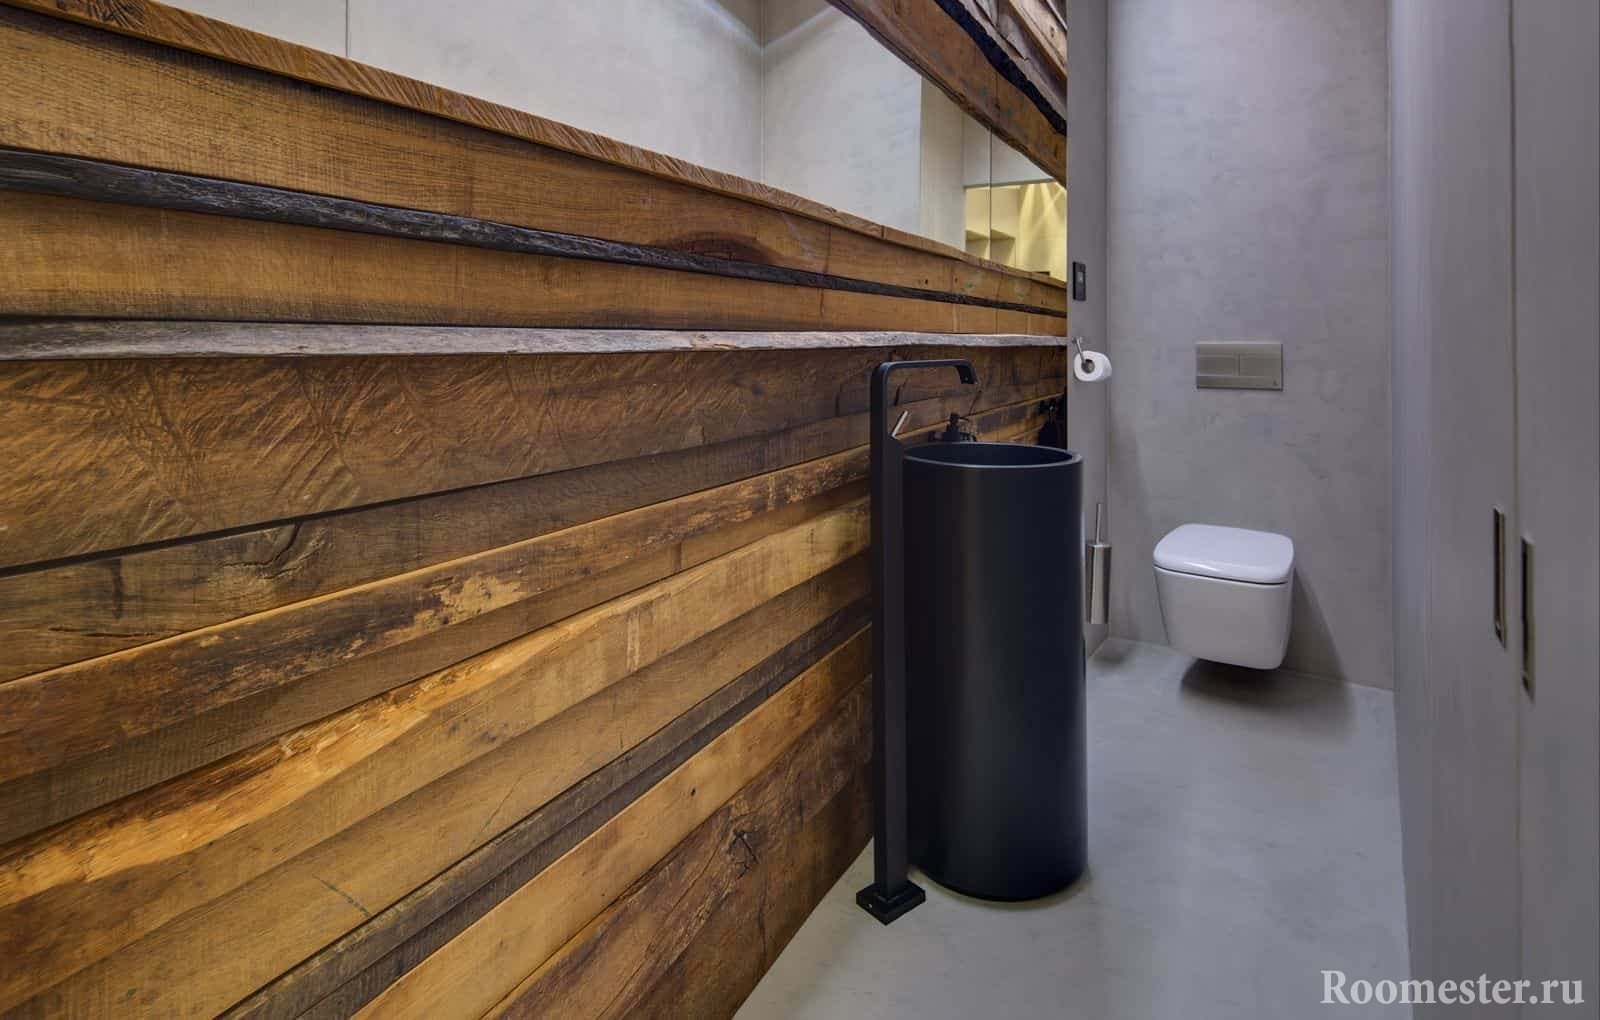 Μοντέρνος σχεδιασμός μιας μικρής τουαλέτας σε οικολογικό στιλ με ένα ασυνήθιστο νεροχύτη